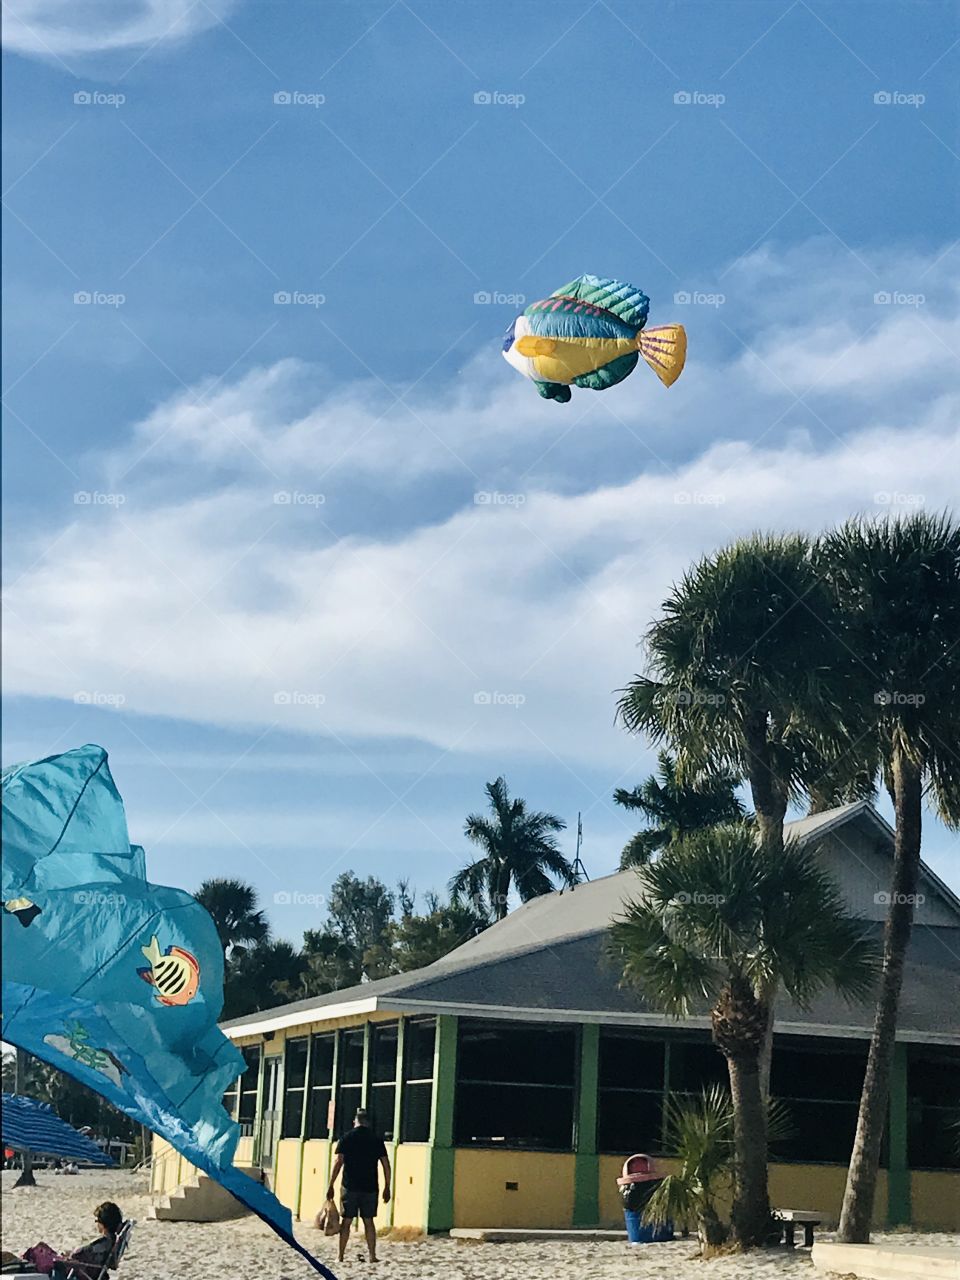 Fish kite